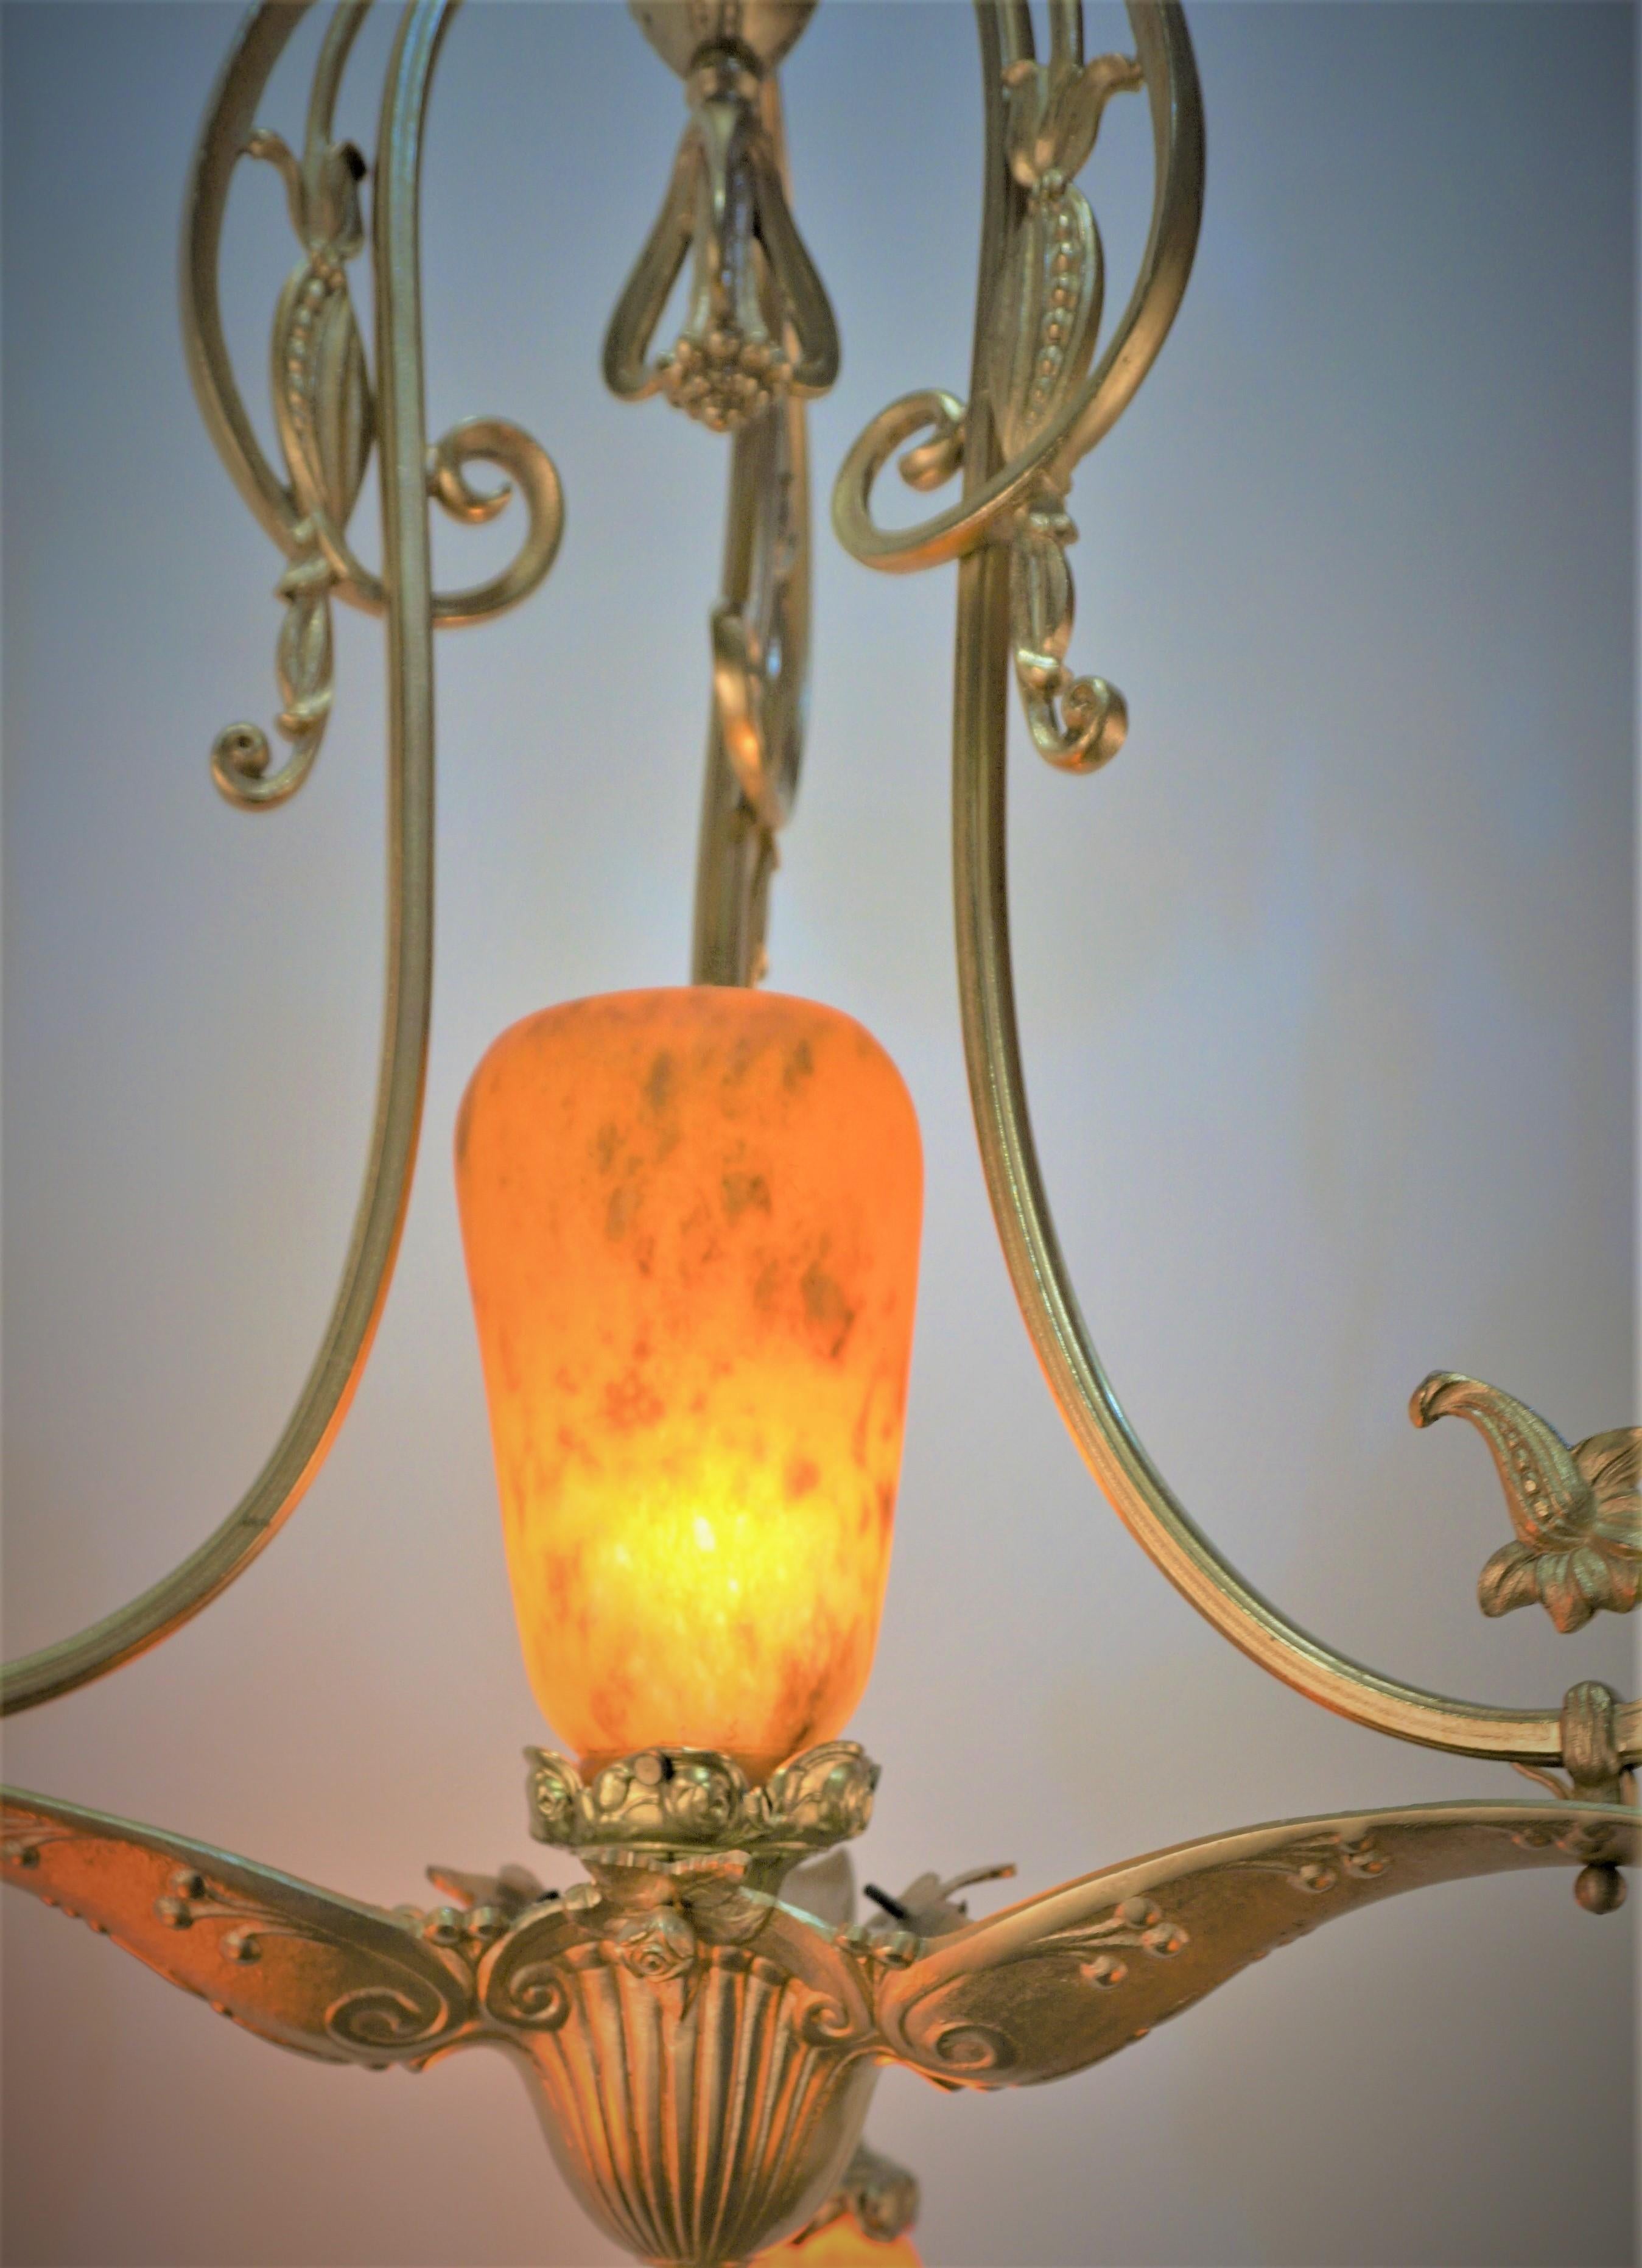 Schönes mundgeblasenes Glas mit elegantem Bronzerahmen aus den 1920er Jahren. Französischer Art-Déco-Kronleuchter von Daum Nancy.
Professionell neu verkabelt und einbaufertig.